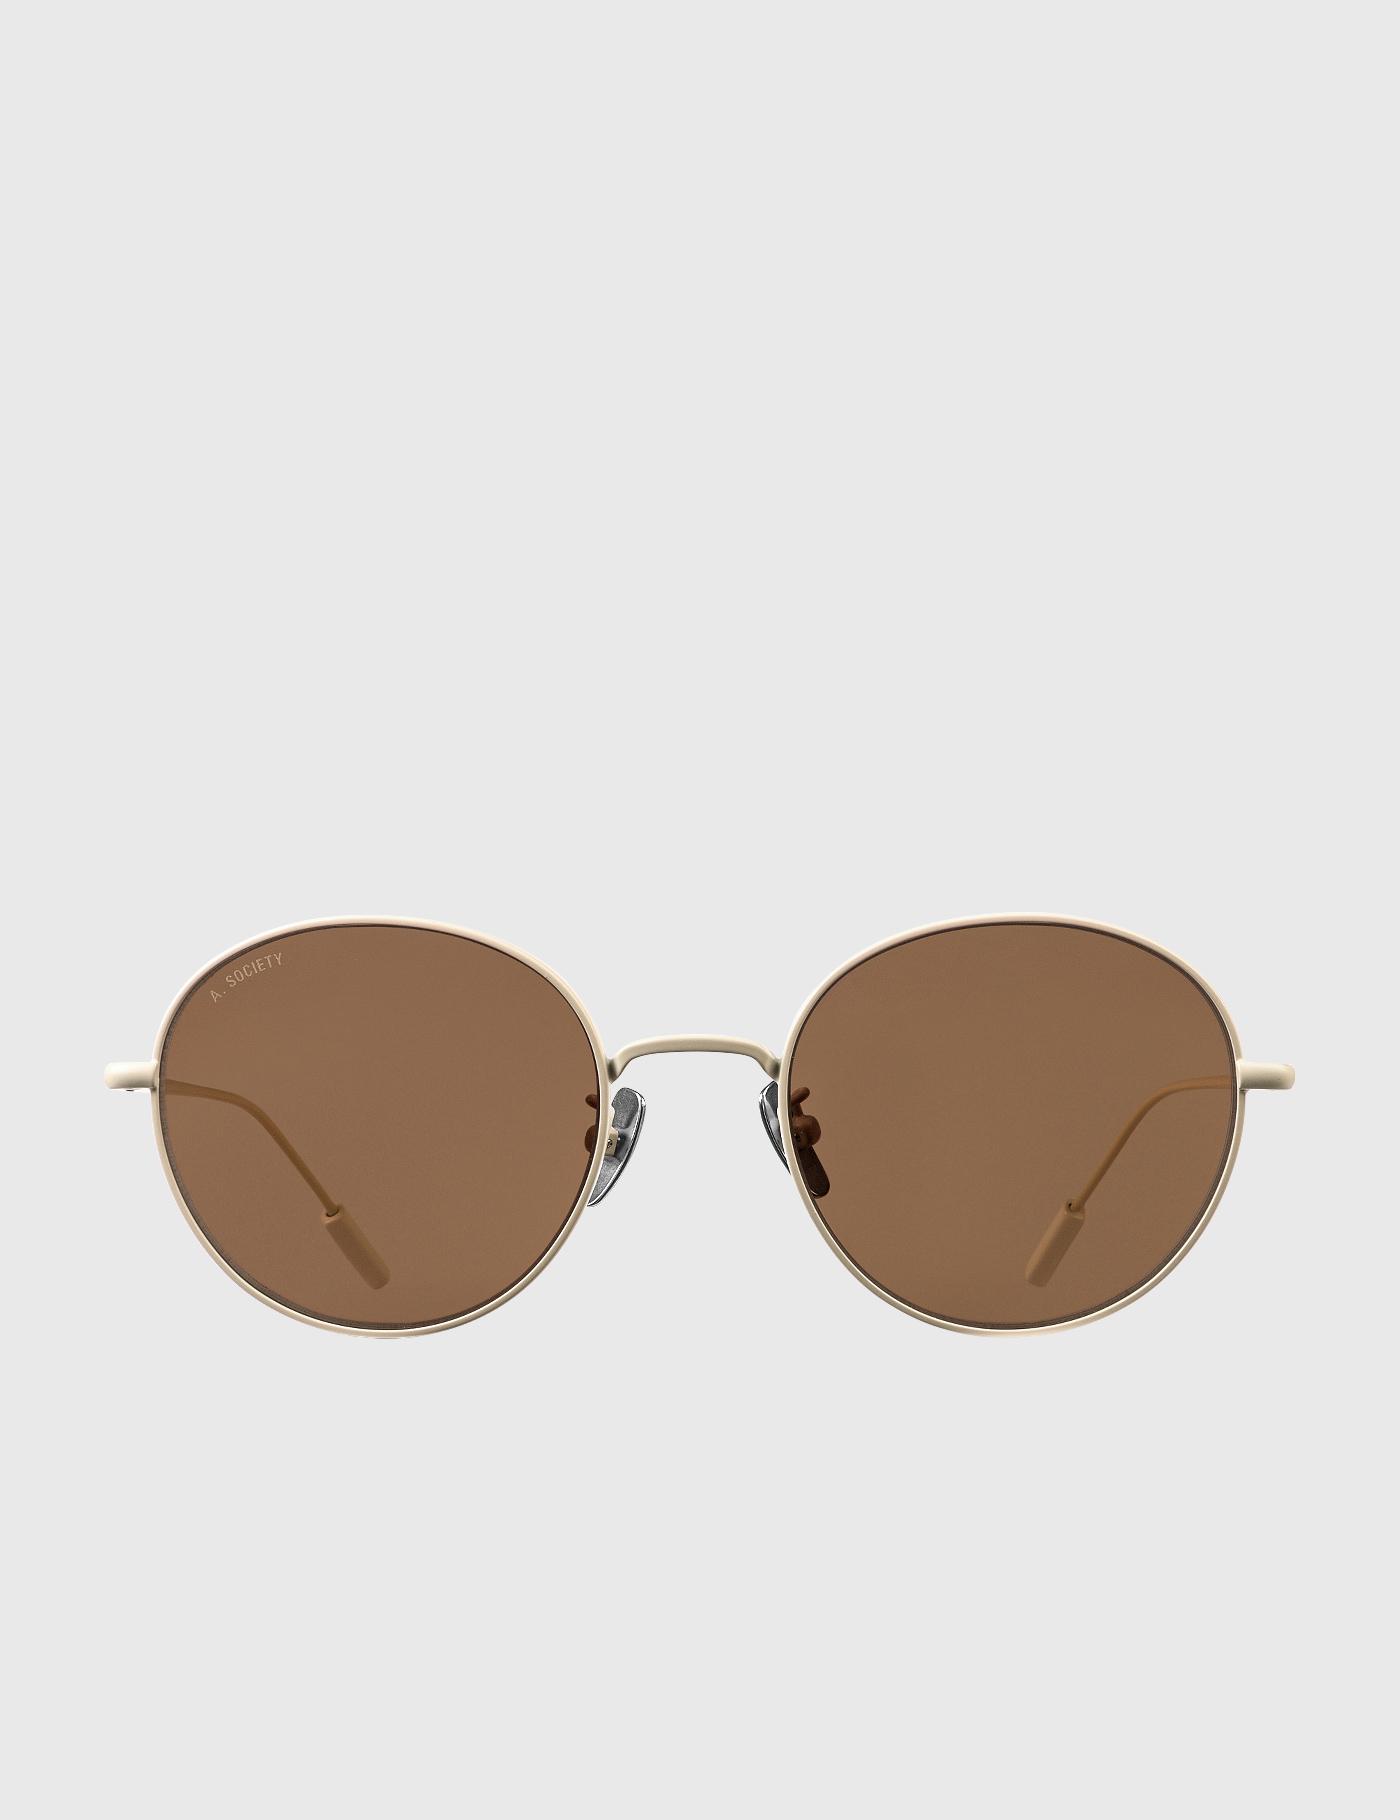 Bobby Sunglasses by A.SOCIETY